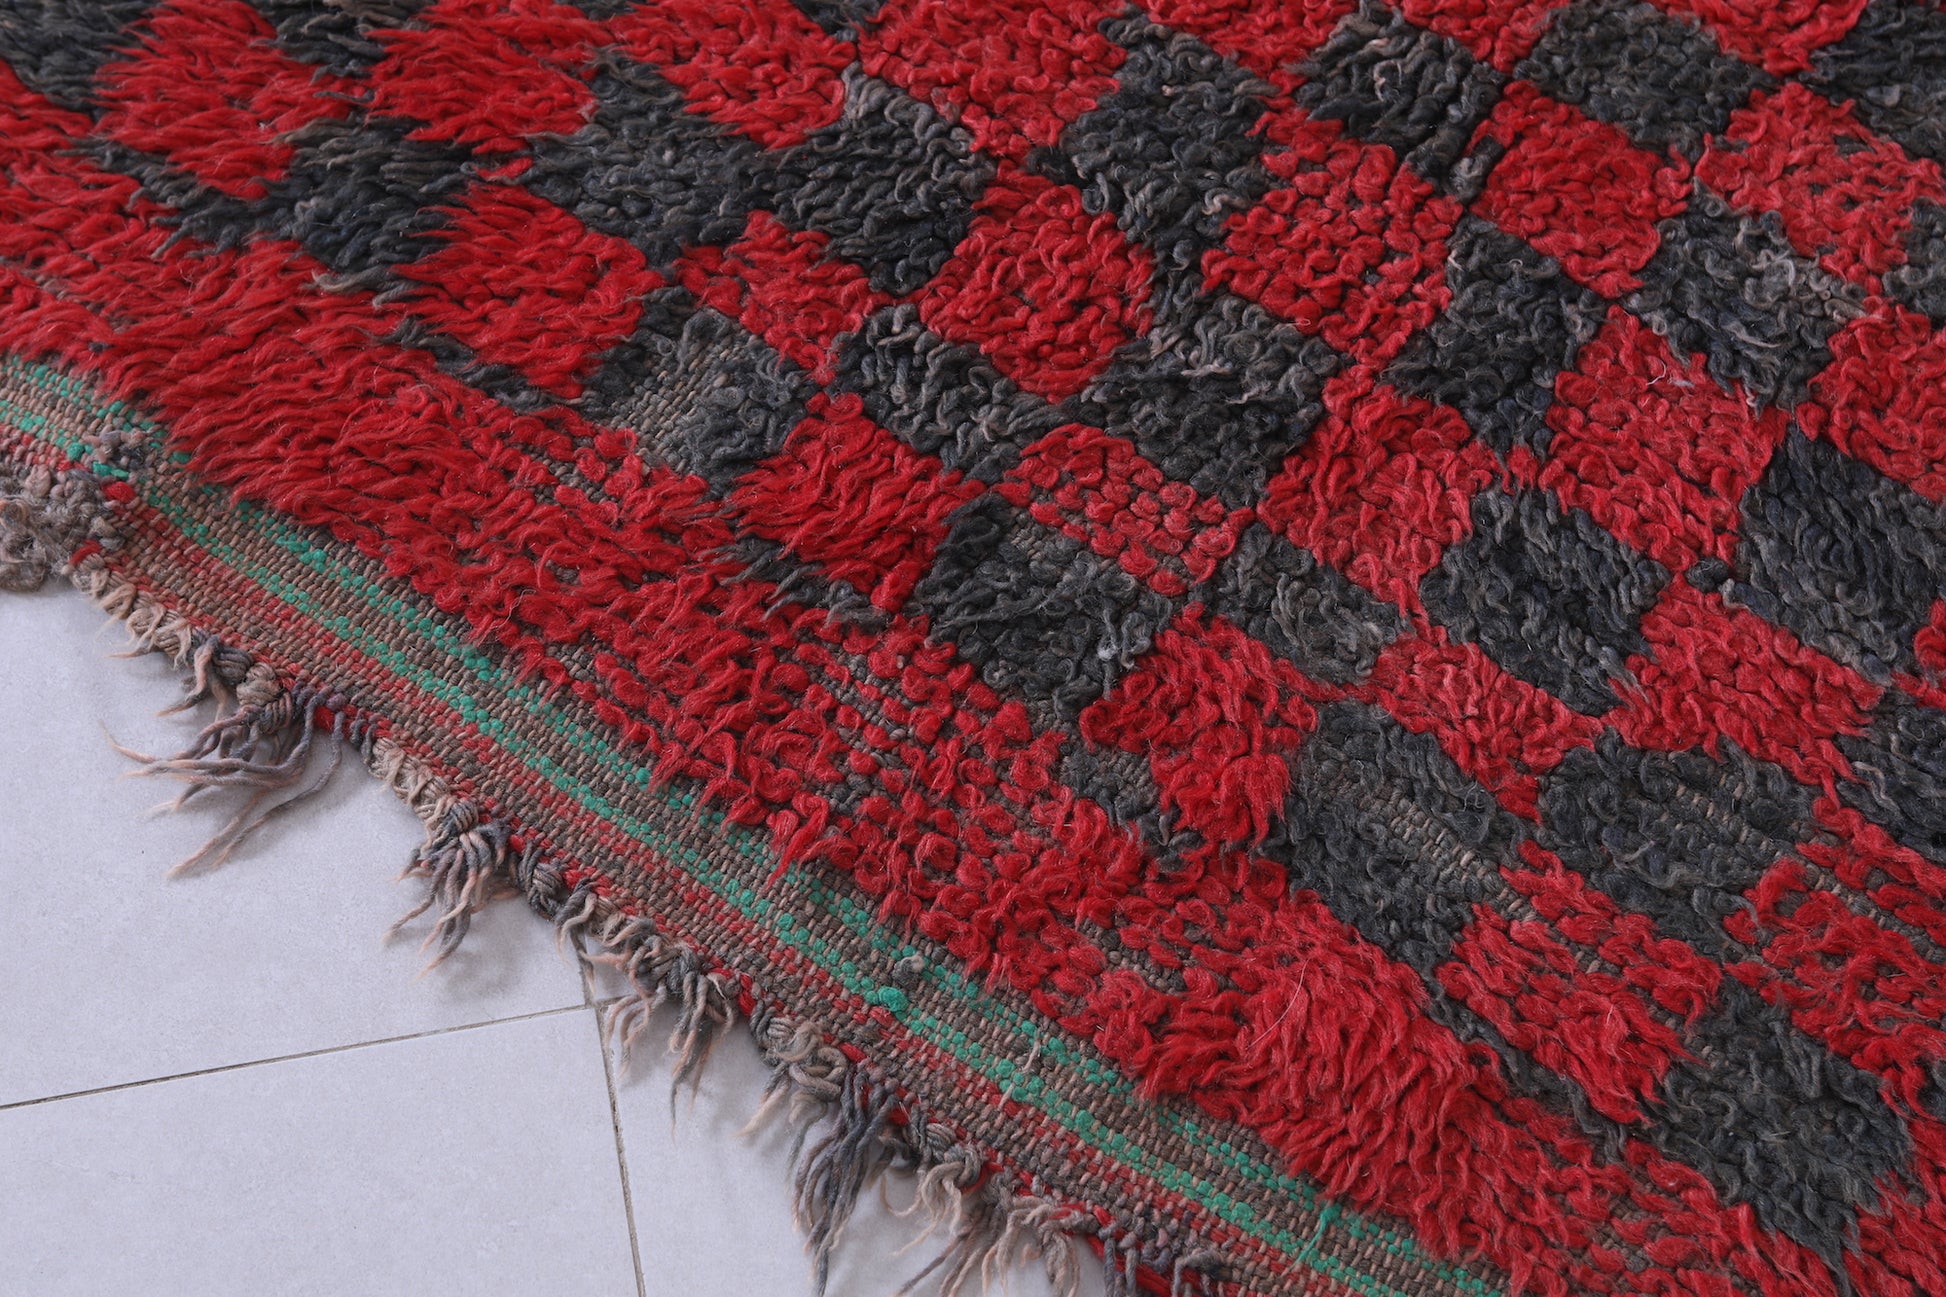 Berber rug 3.6 FT X 8.4 FT